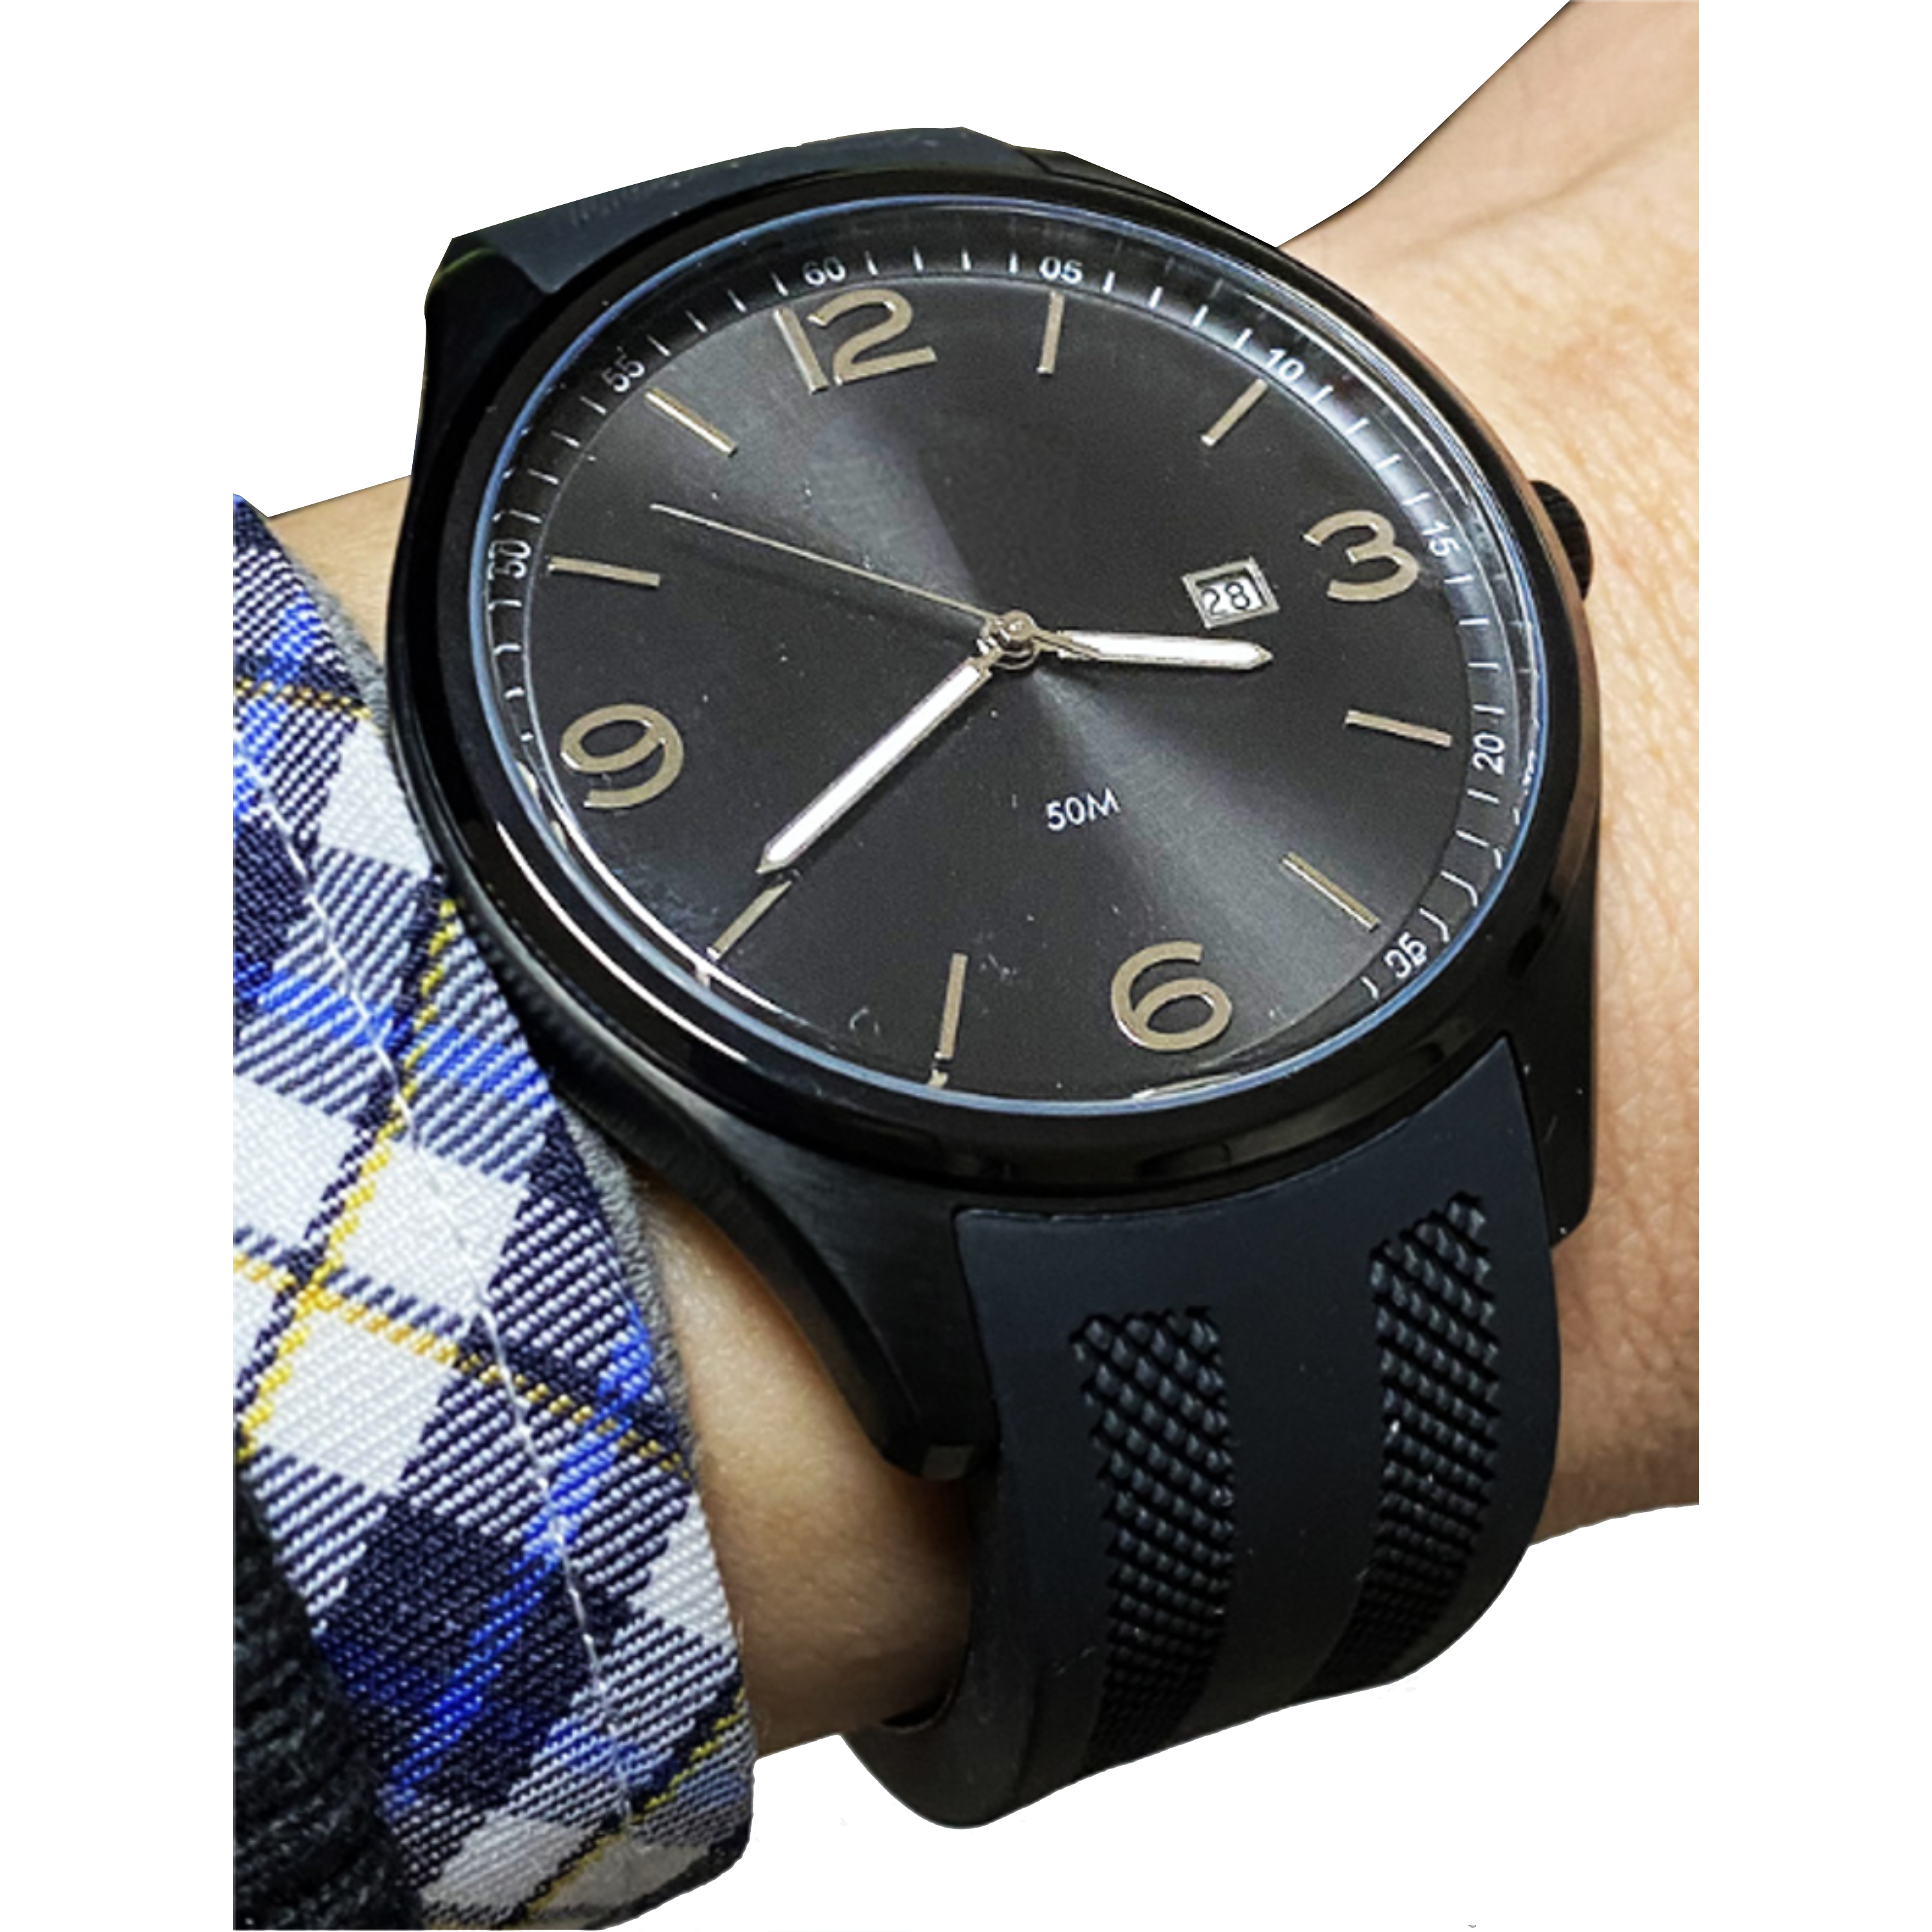 שעון יד לגבר COMTEX S7G-3 44mm - צבע שחור אחריות לשנה ע"י היבואן הרשמי